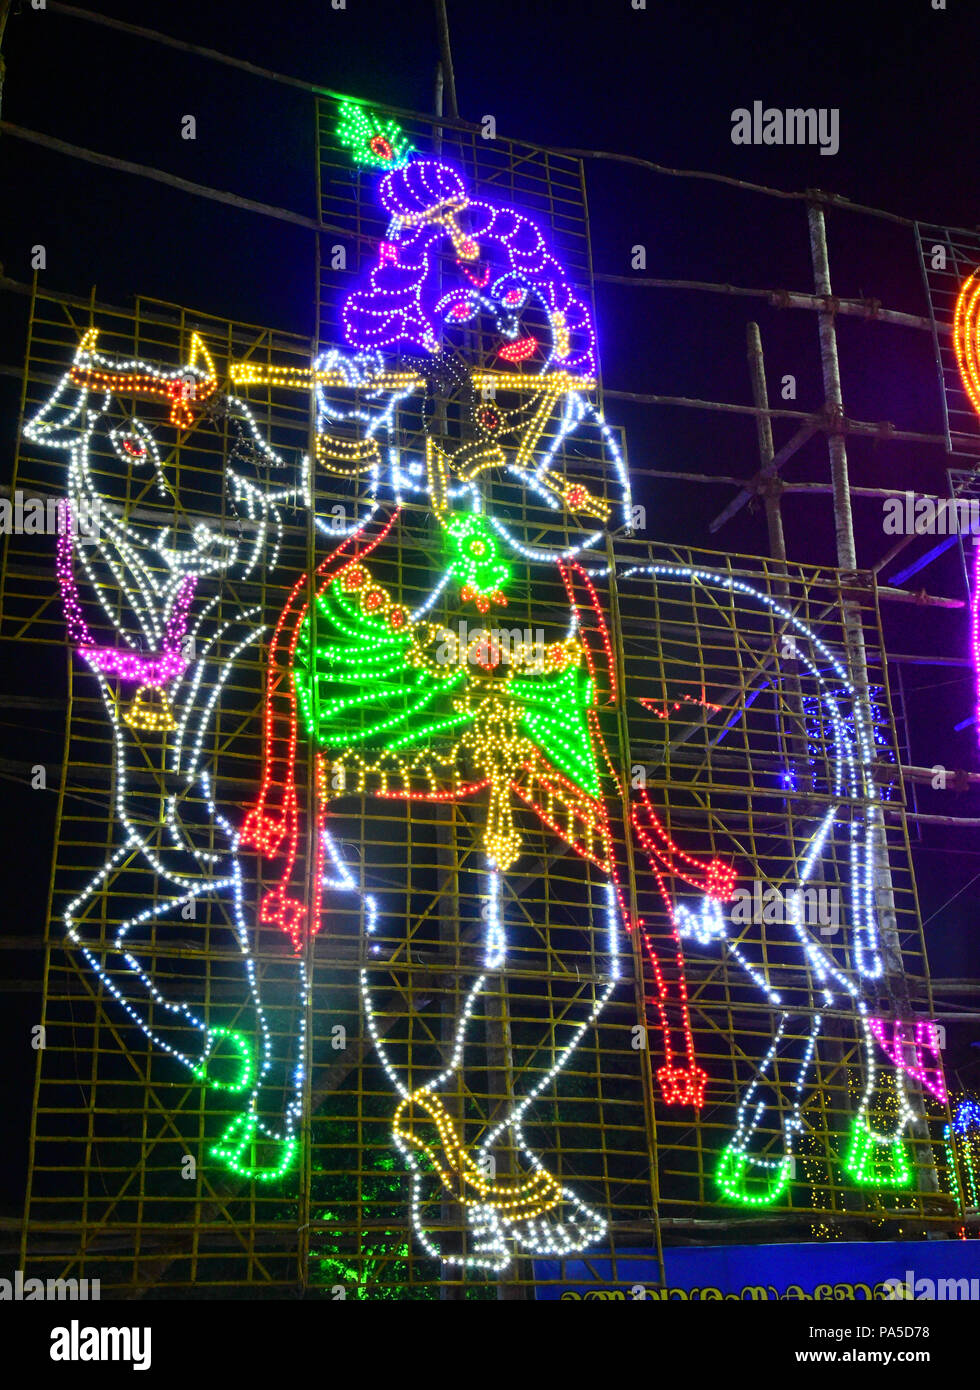 illuminated image of lord krishna,india Stock Photo